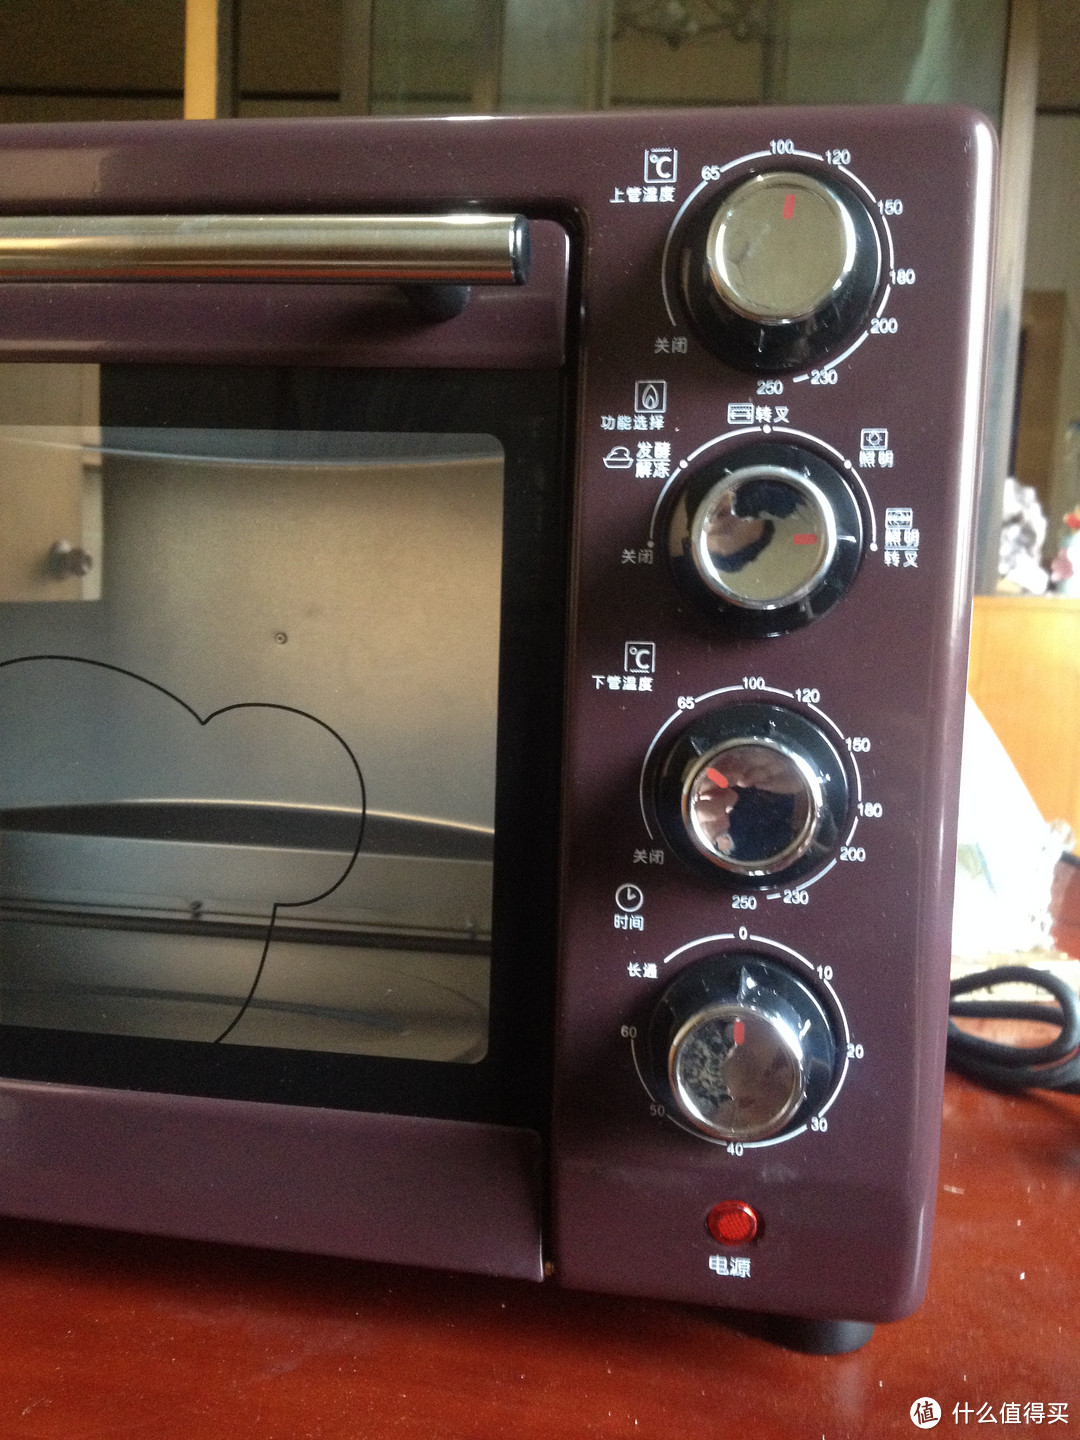 第一次晒物给了Bear 小熊 DKX-230UB 家用电烤箱